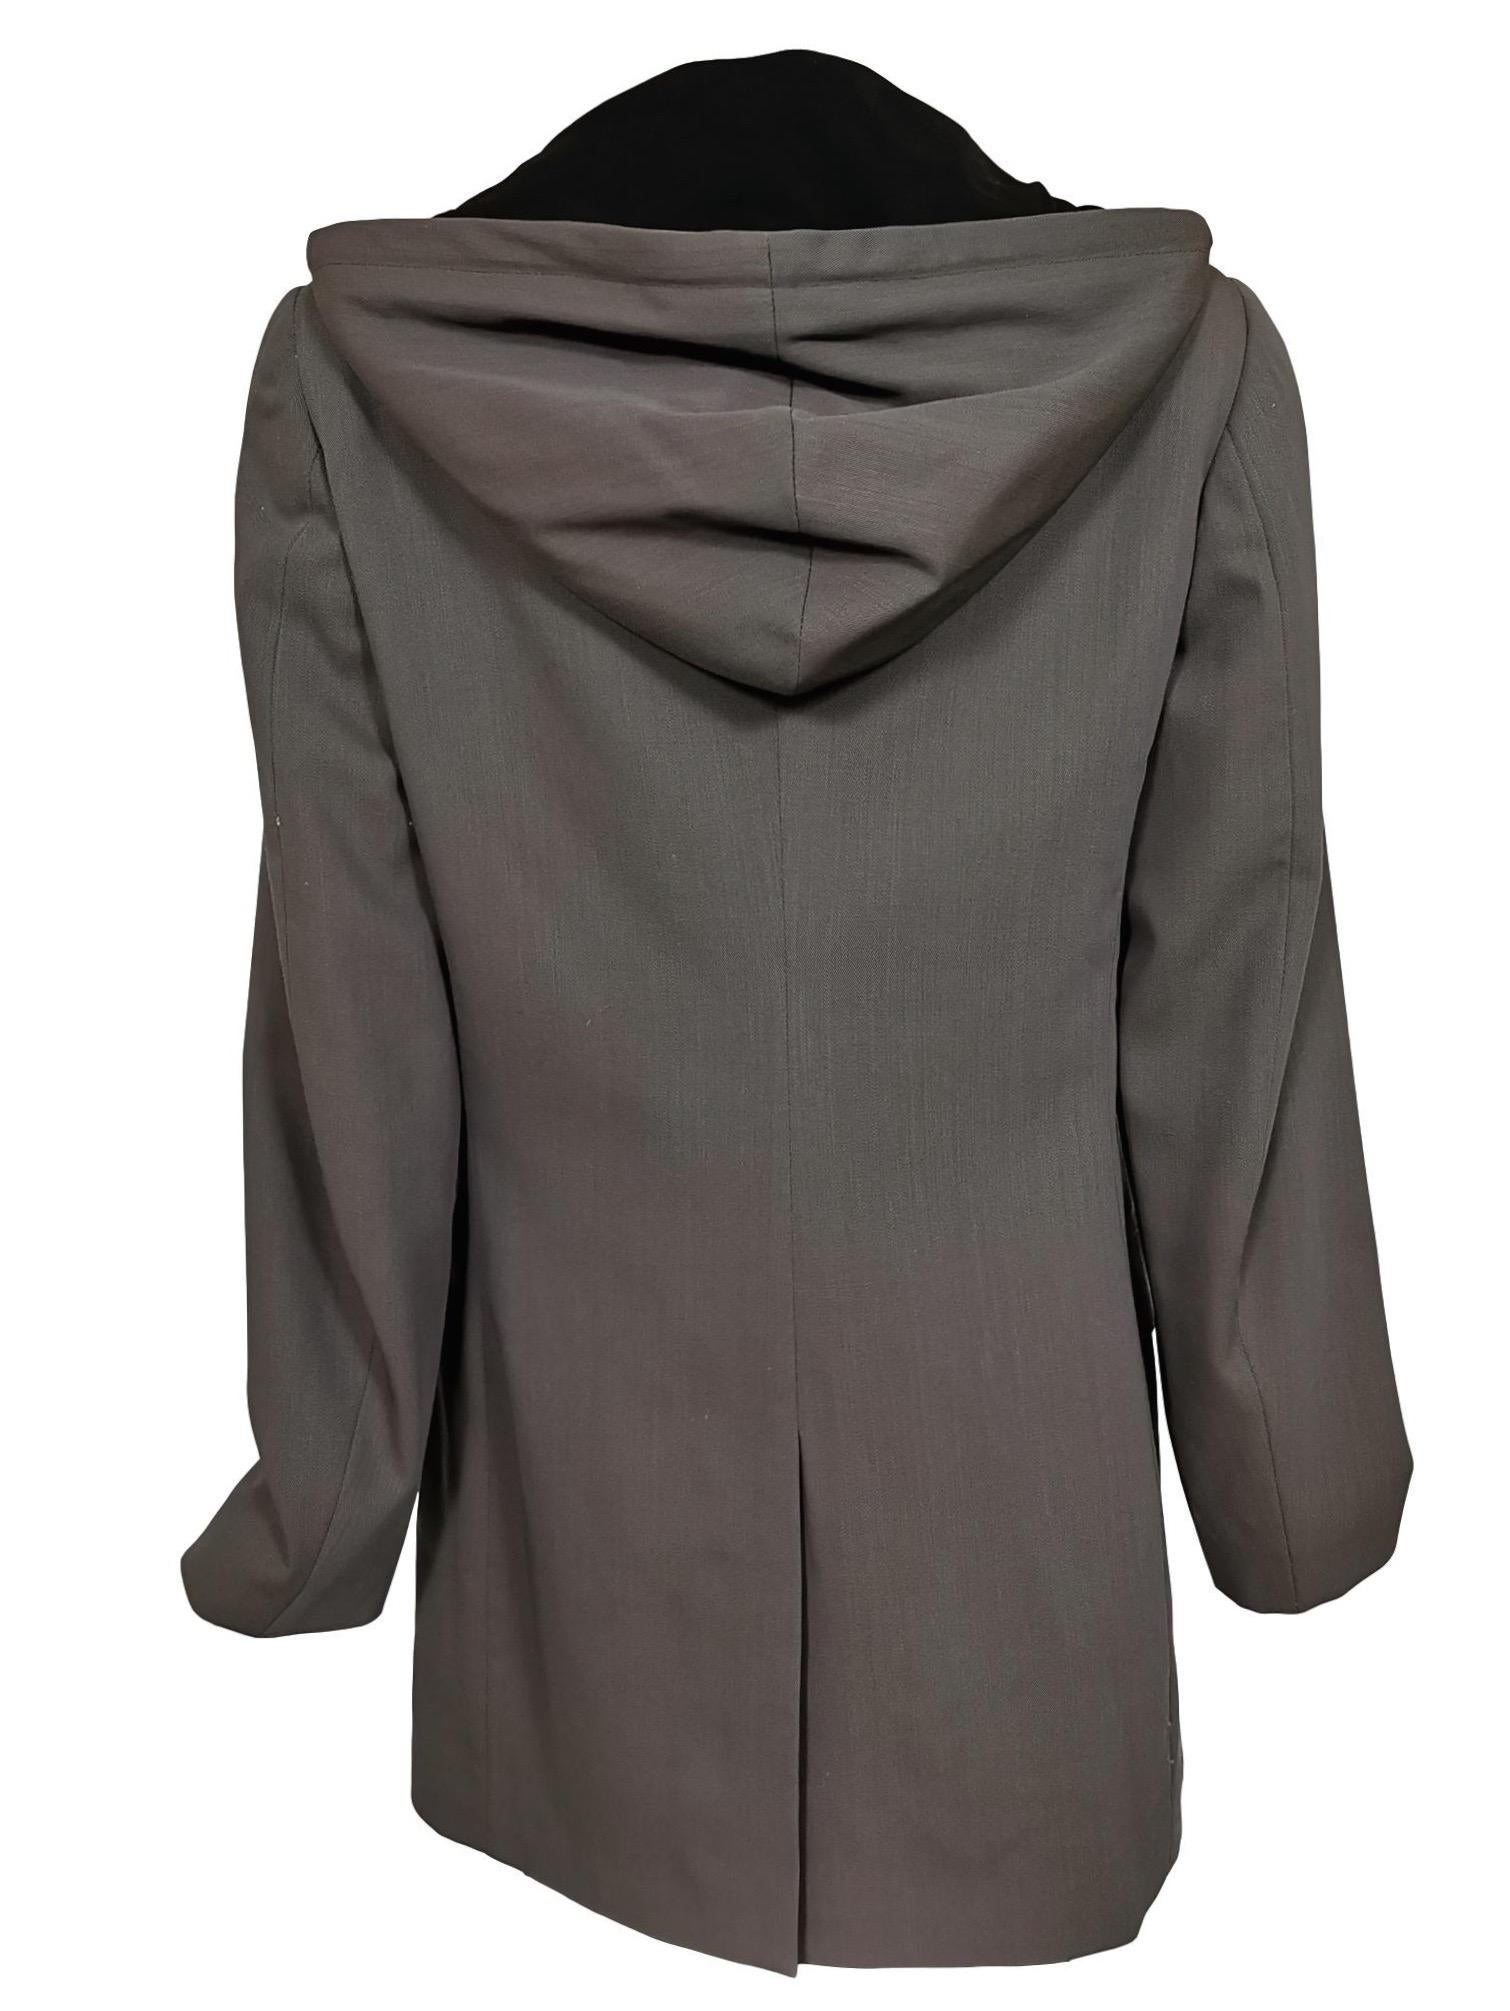 Jean Paul Gaultier Hooded Dress Jacket Autumn/Winter 1998 For Sale 7